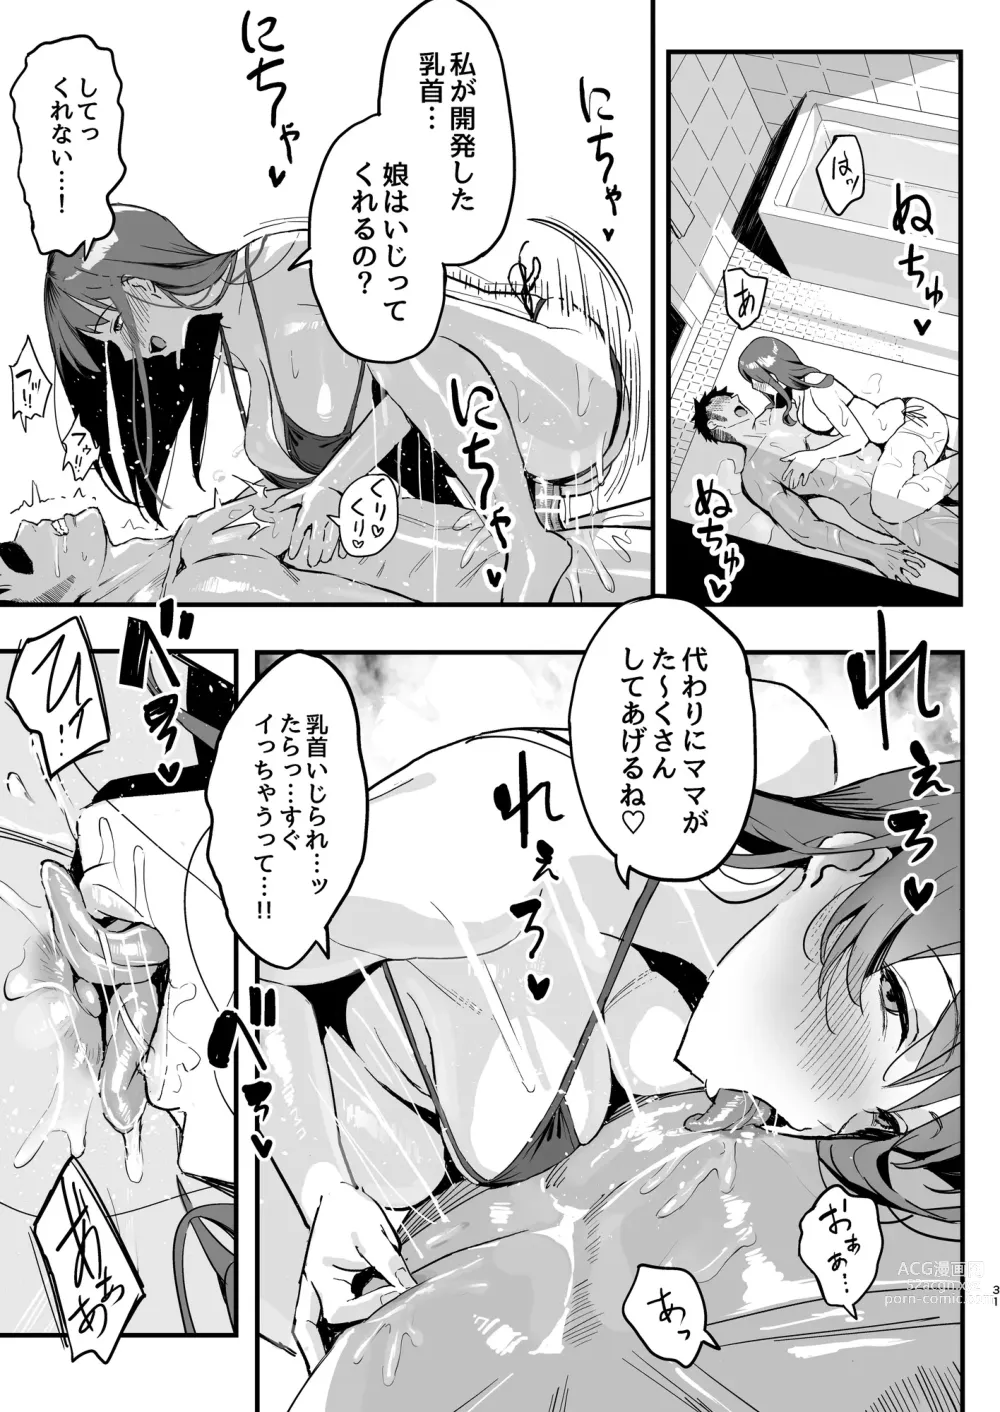 Page 30 of doujinshi Kanojo no mama wa mama katsu no mamadatta.